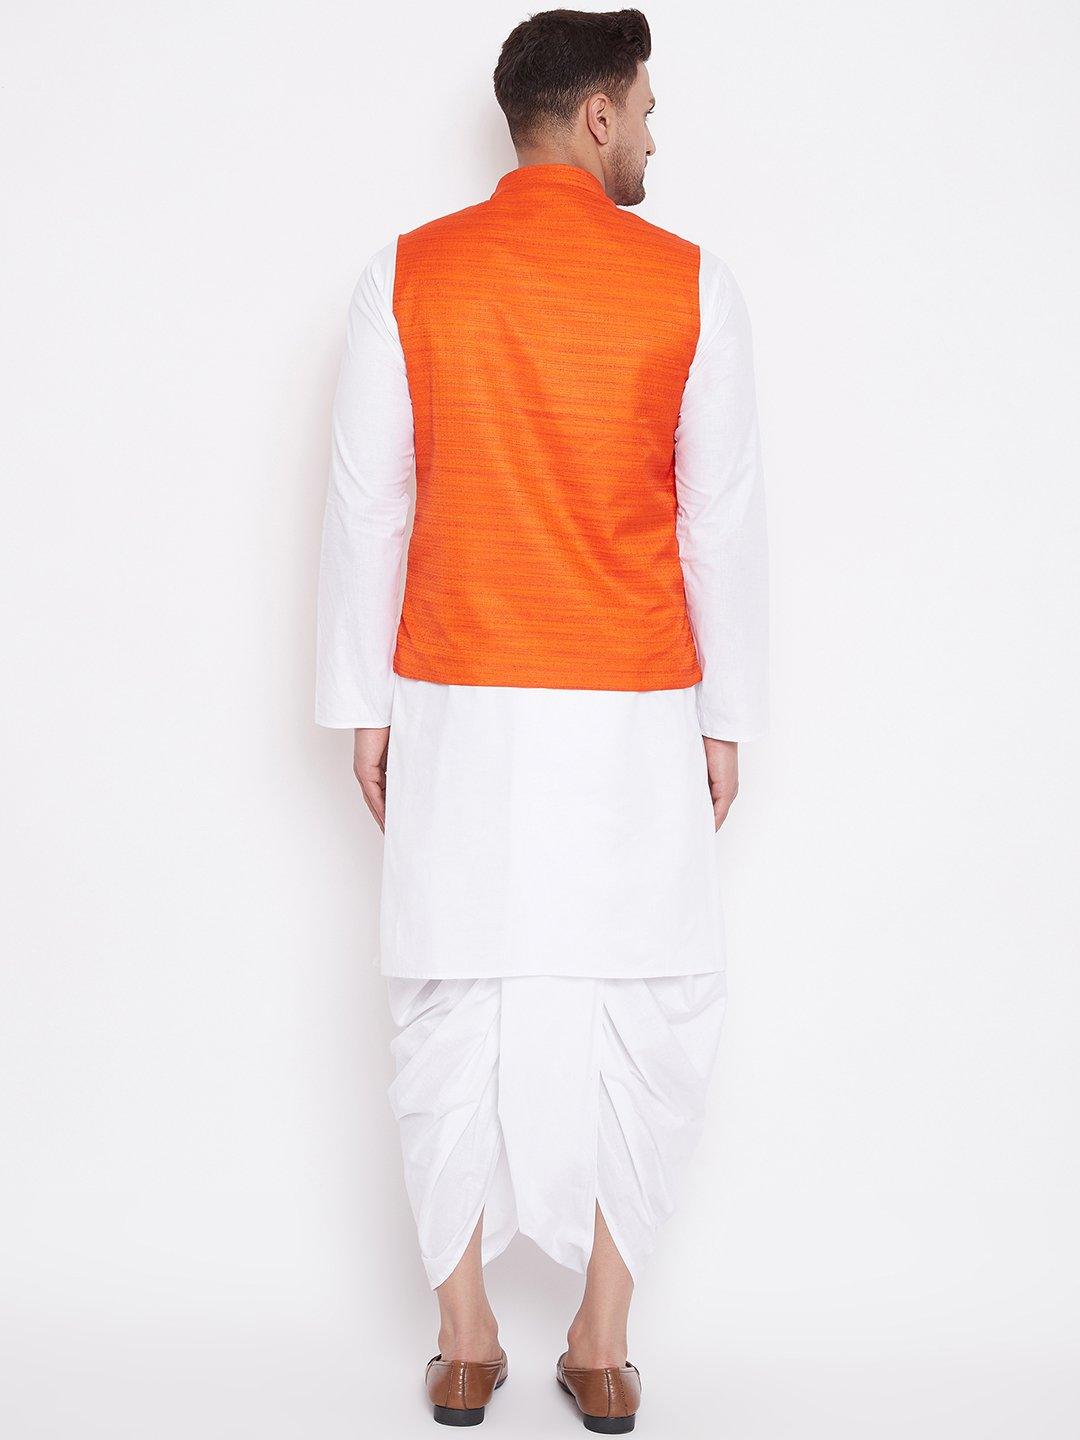 Men's Orange And White Cotton Blend Jacket, Kurta and Dhoti Set - Vastramay - Indiakreations